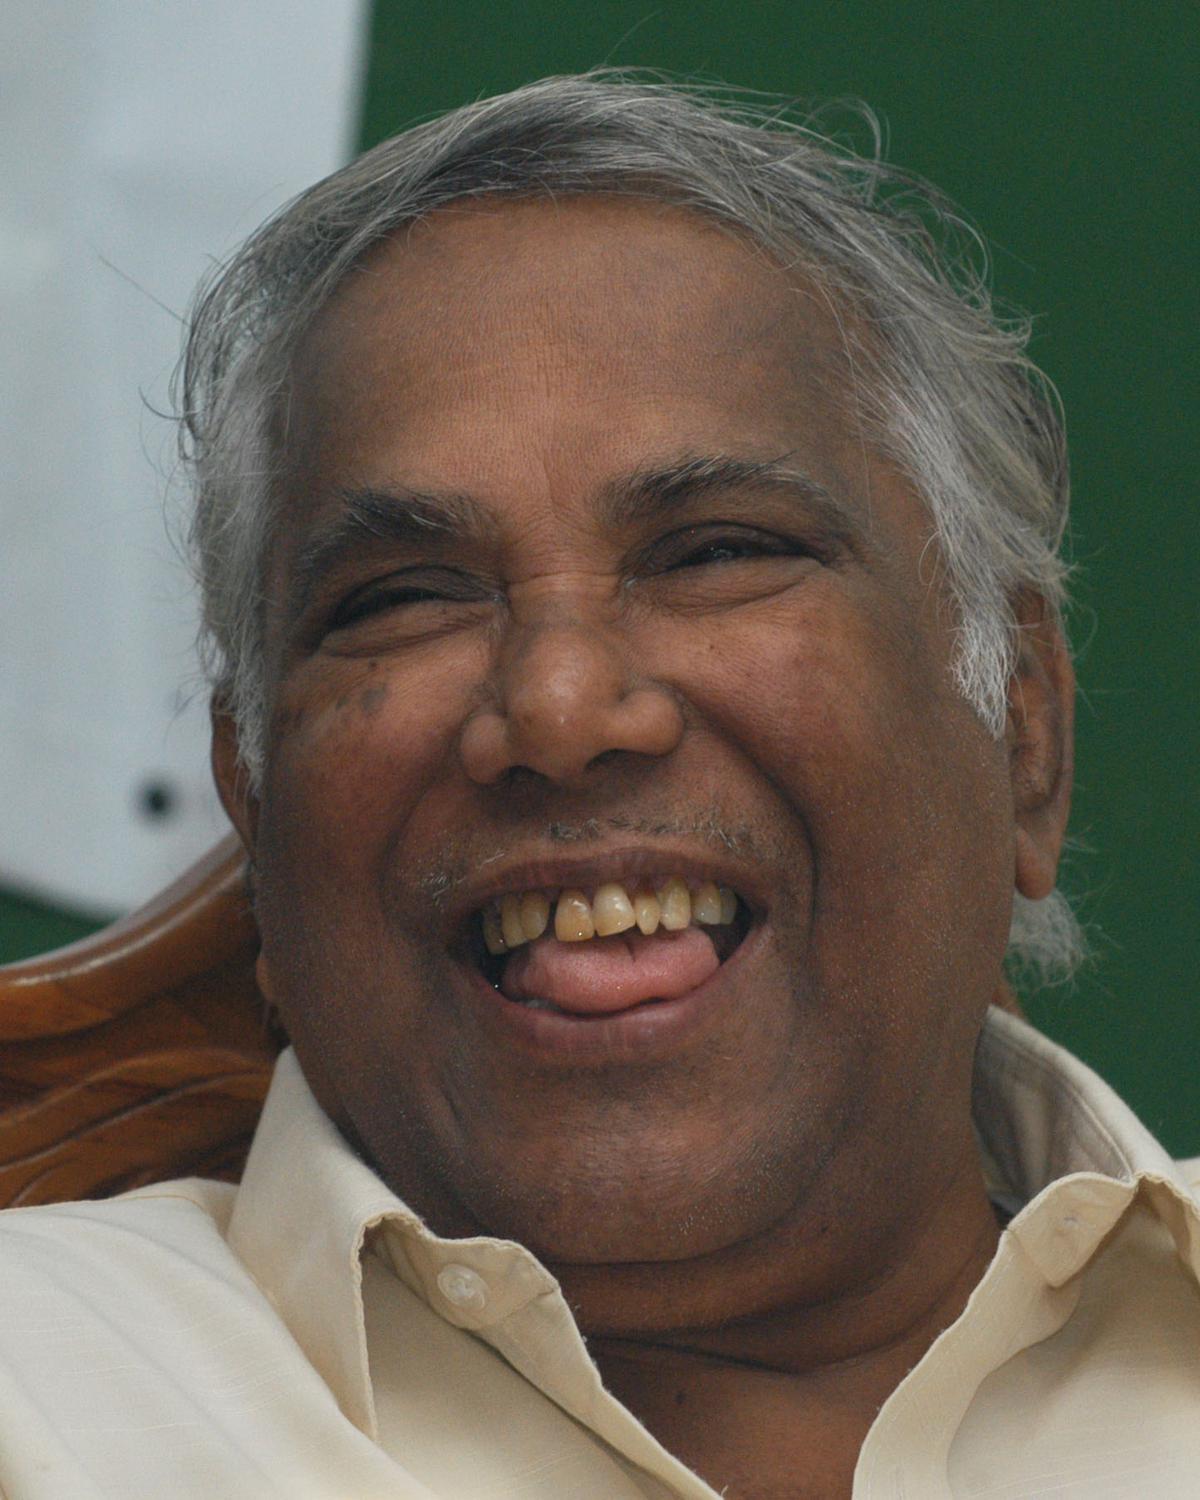 Tamil scholar Avvai Natarajan dies at 86